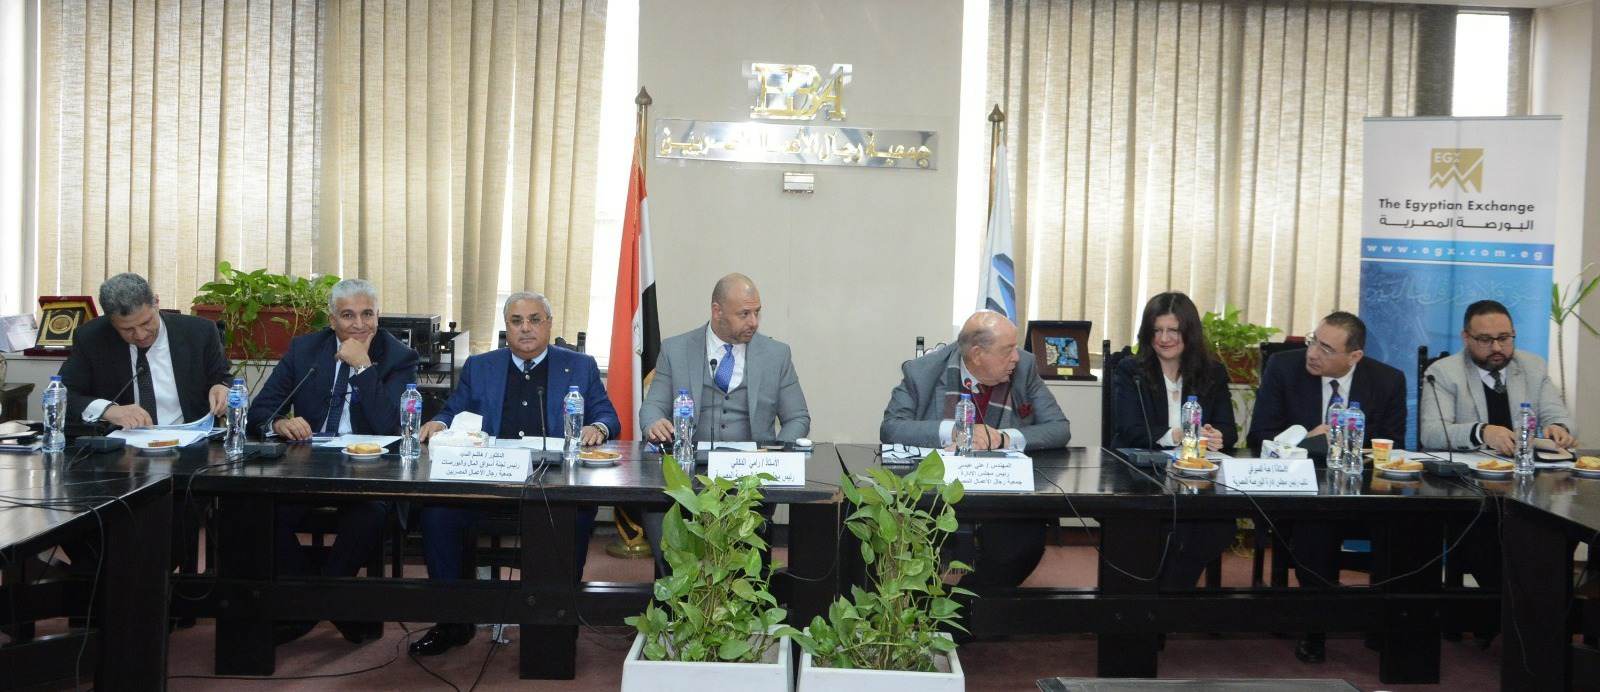 رئيس البورصة رامي الدكاني مع جمعية رجال الأعمال المصريين